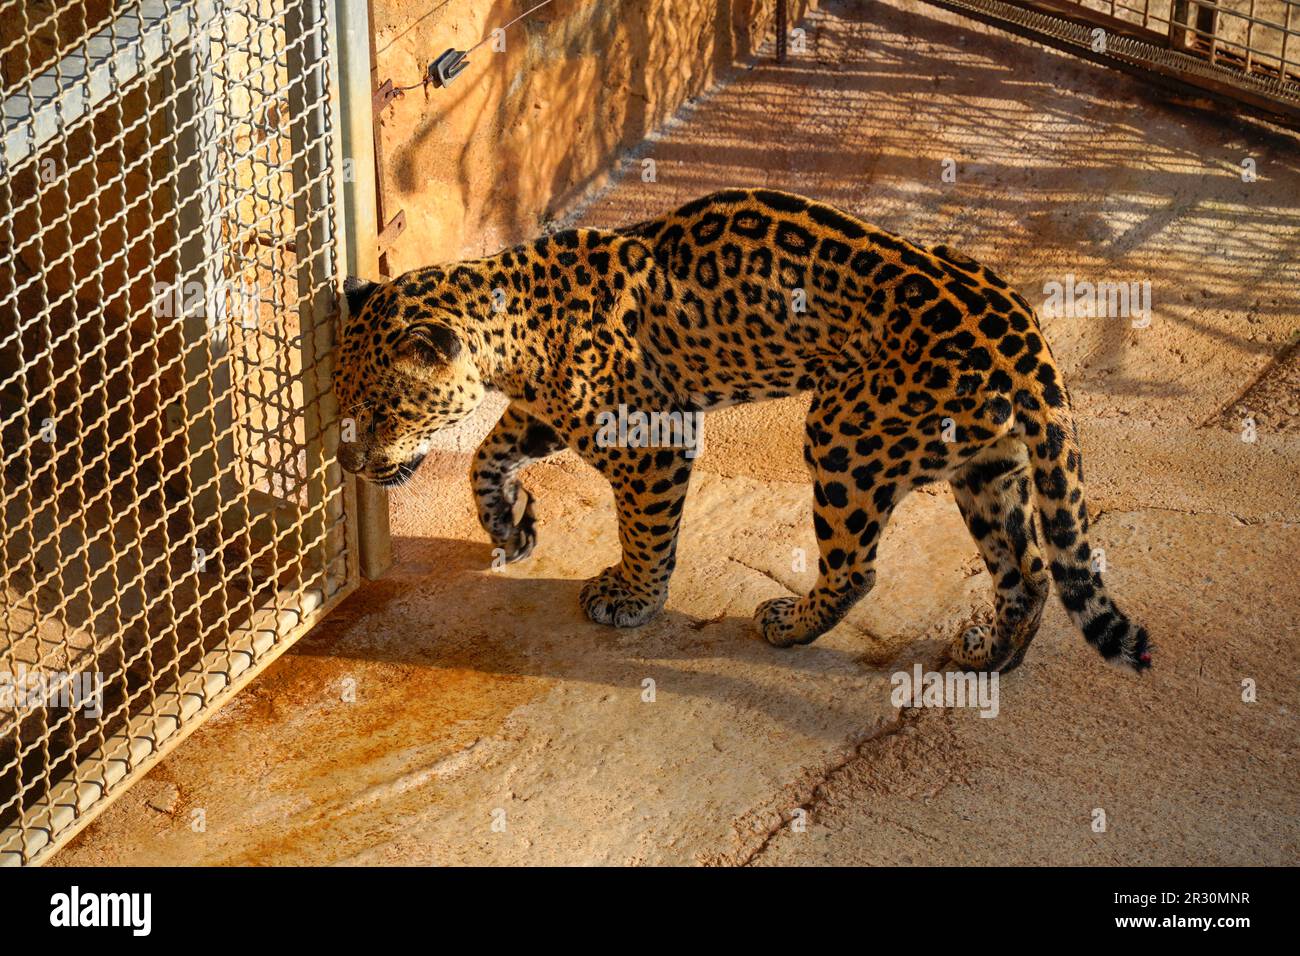 Jaguar (Panthera onca) confinée dans une cage, en grattant la tête contre les barres Banque D'Images